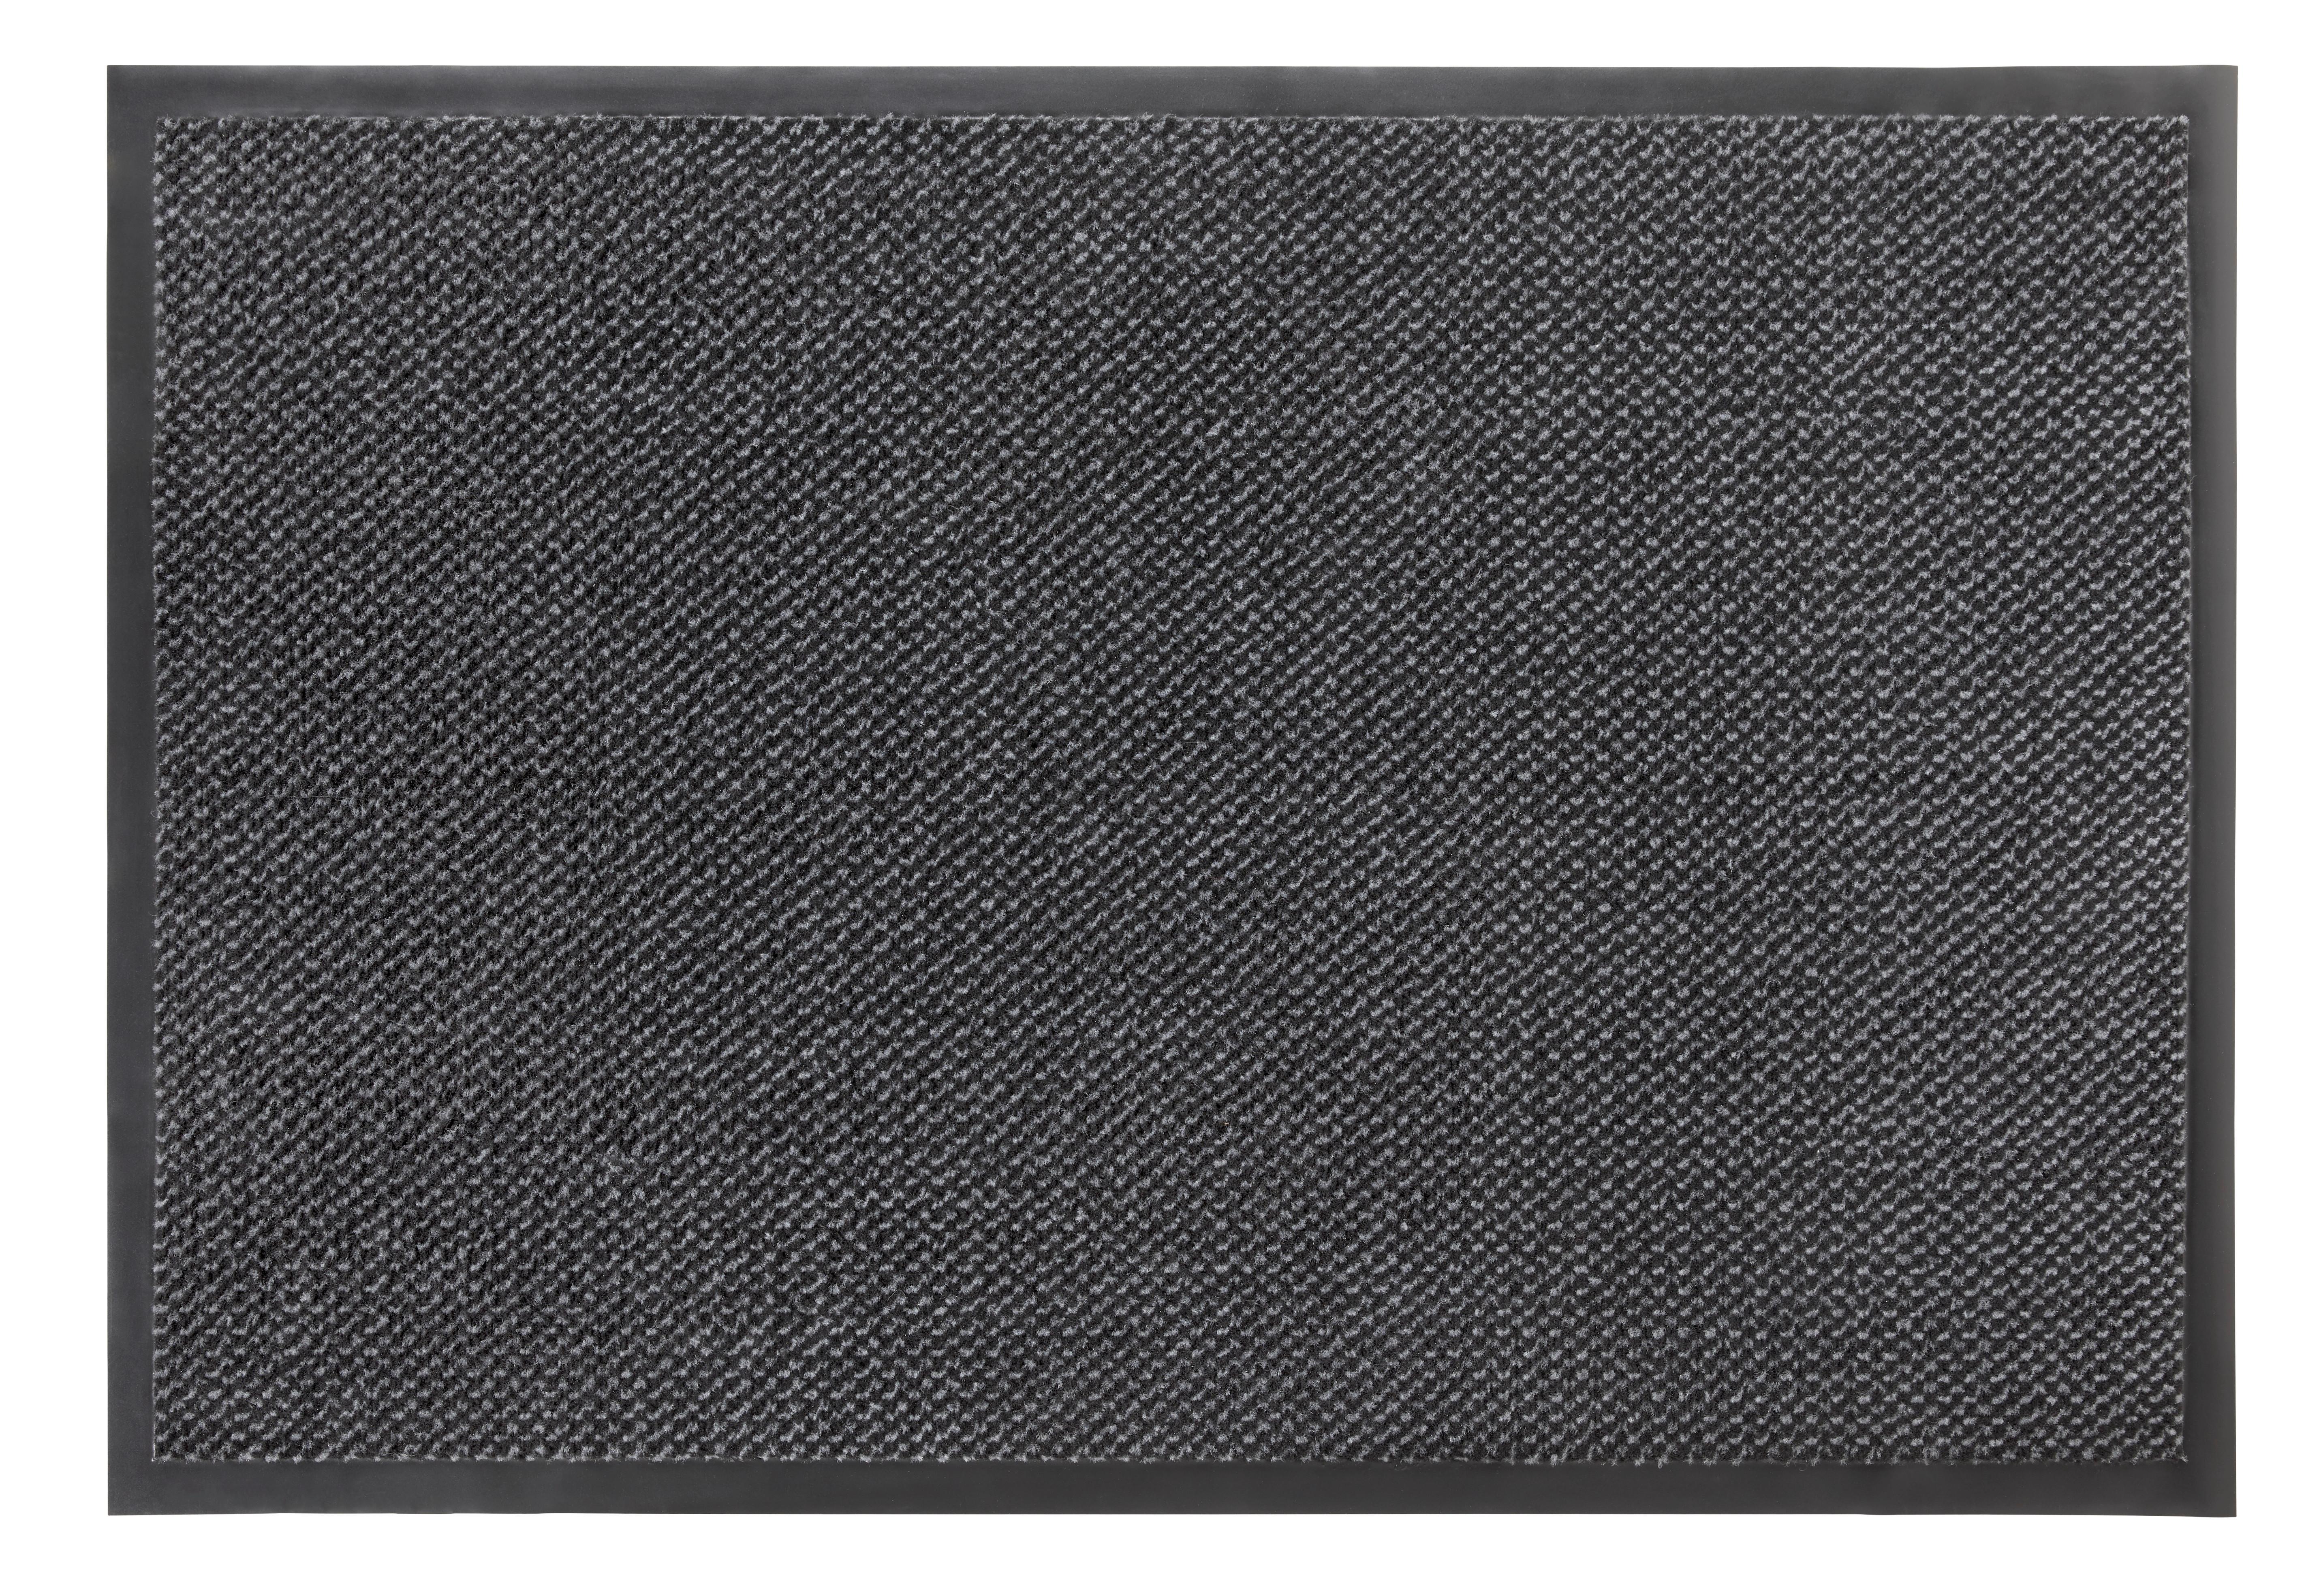 Predpražnik Hamptons 3 - siva/črna, Konvencionalno, tekstil (80/120cm) - Modern Living